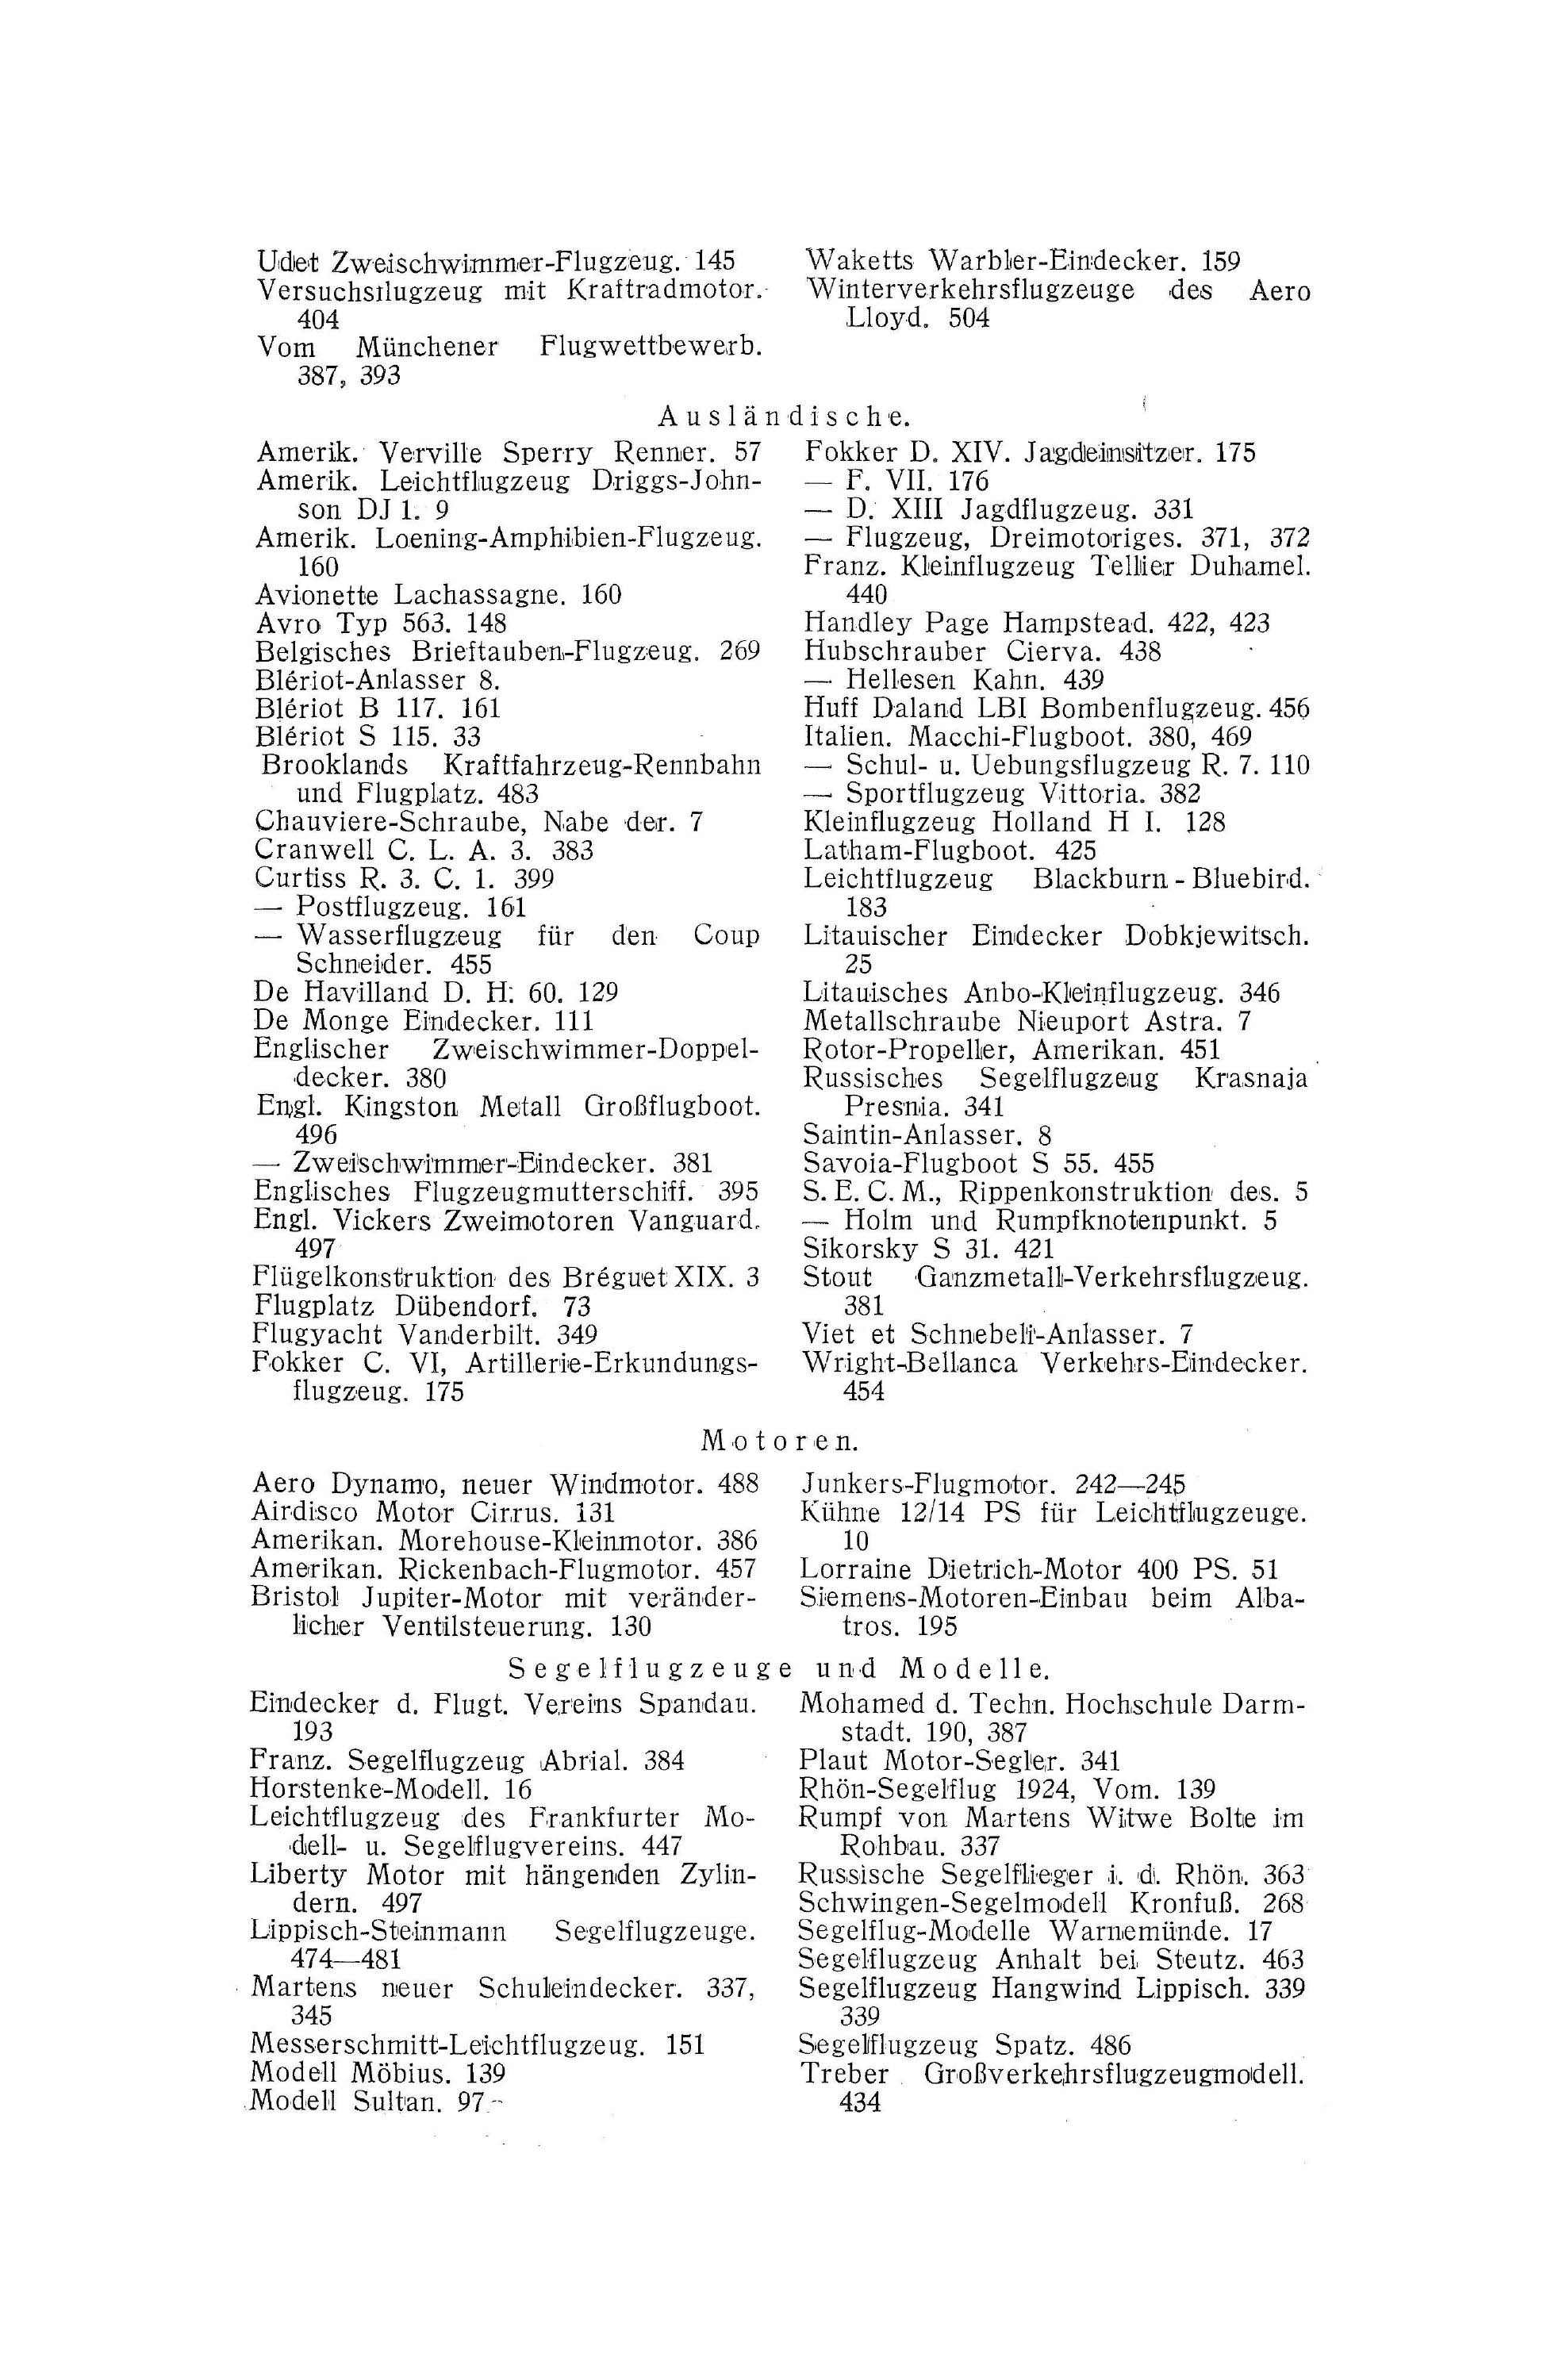 Sachregister und Inhaltsverzeichnis der Zeitschrift Flugsport 1925